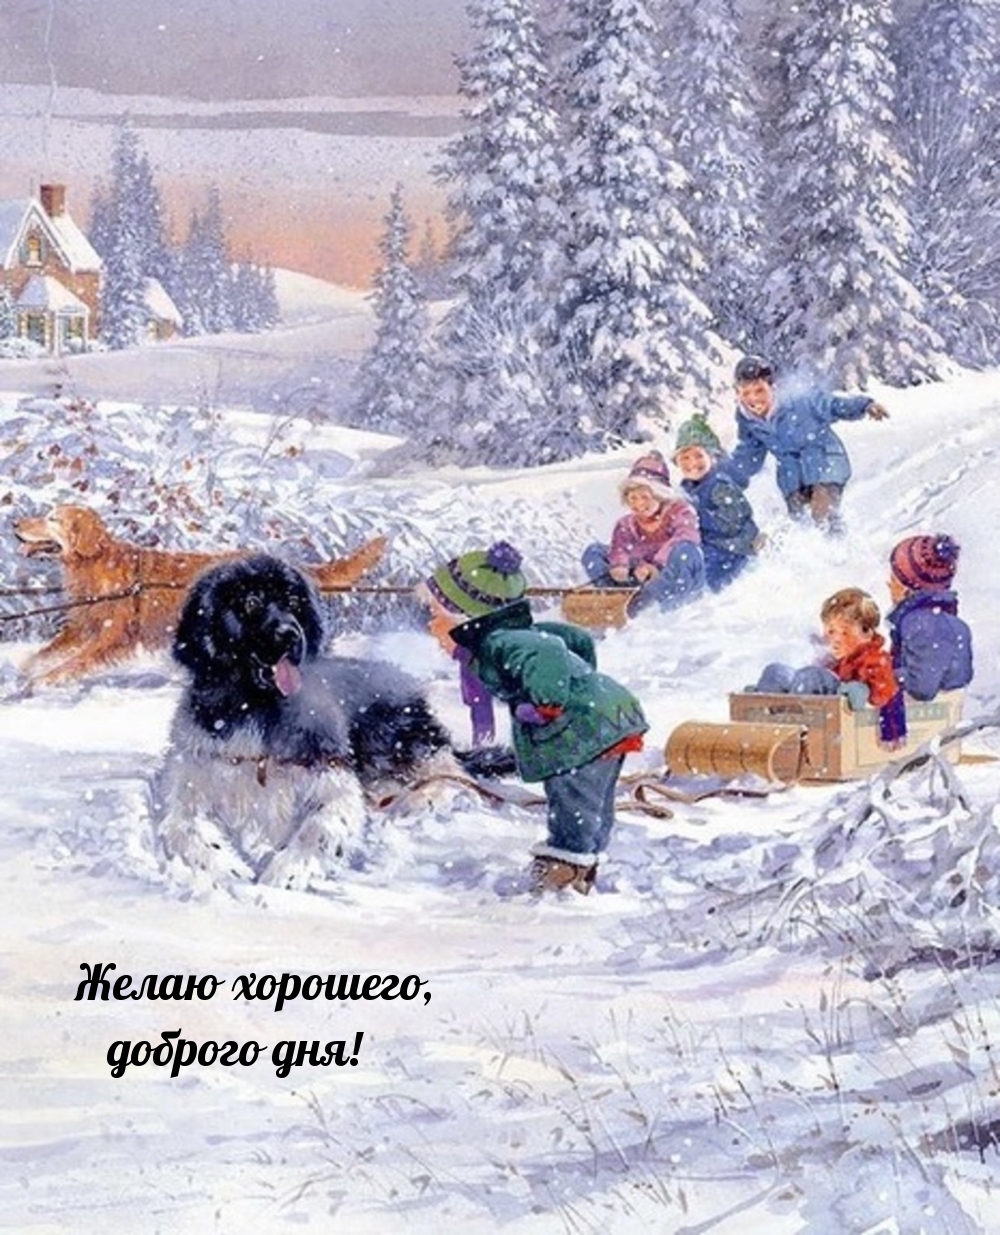 Картинка милая желаю хорошего зимнего дня